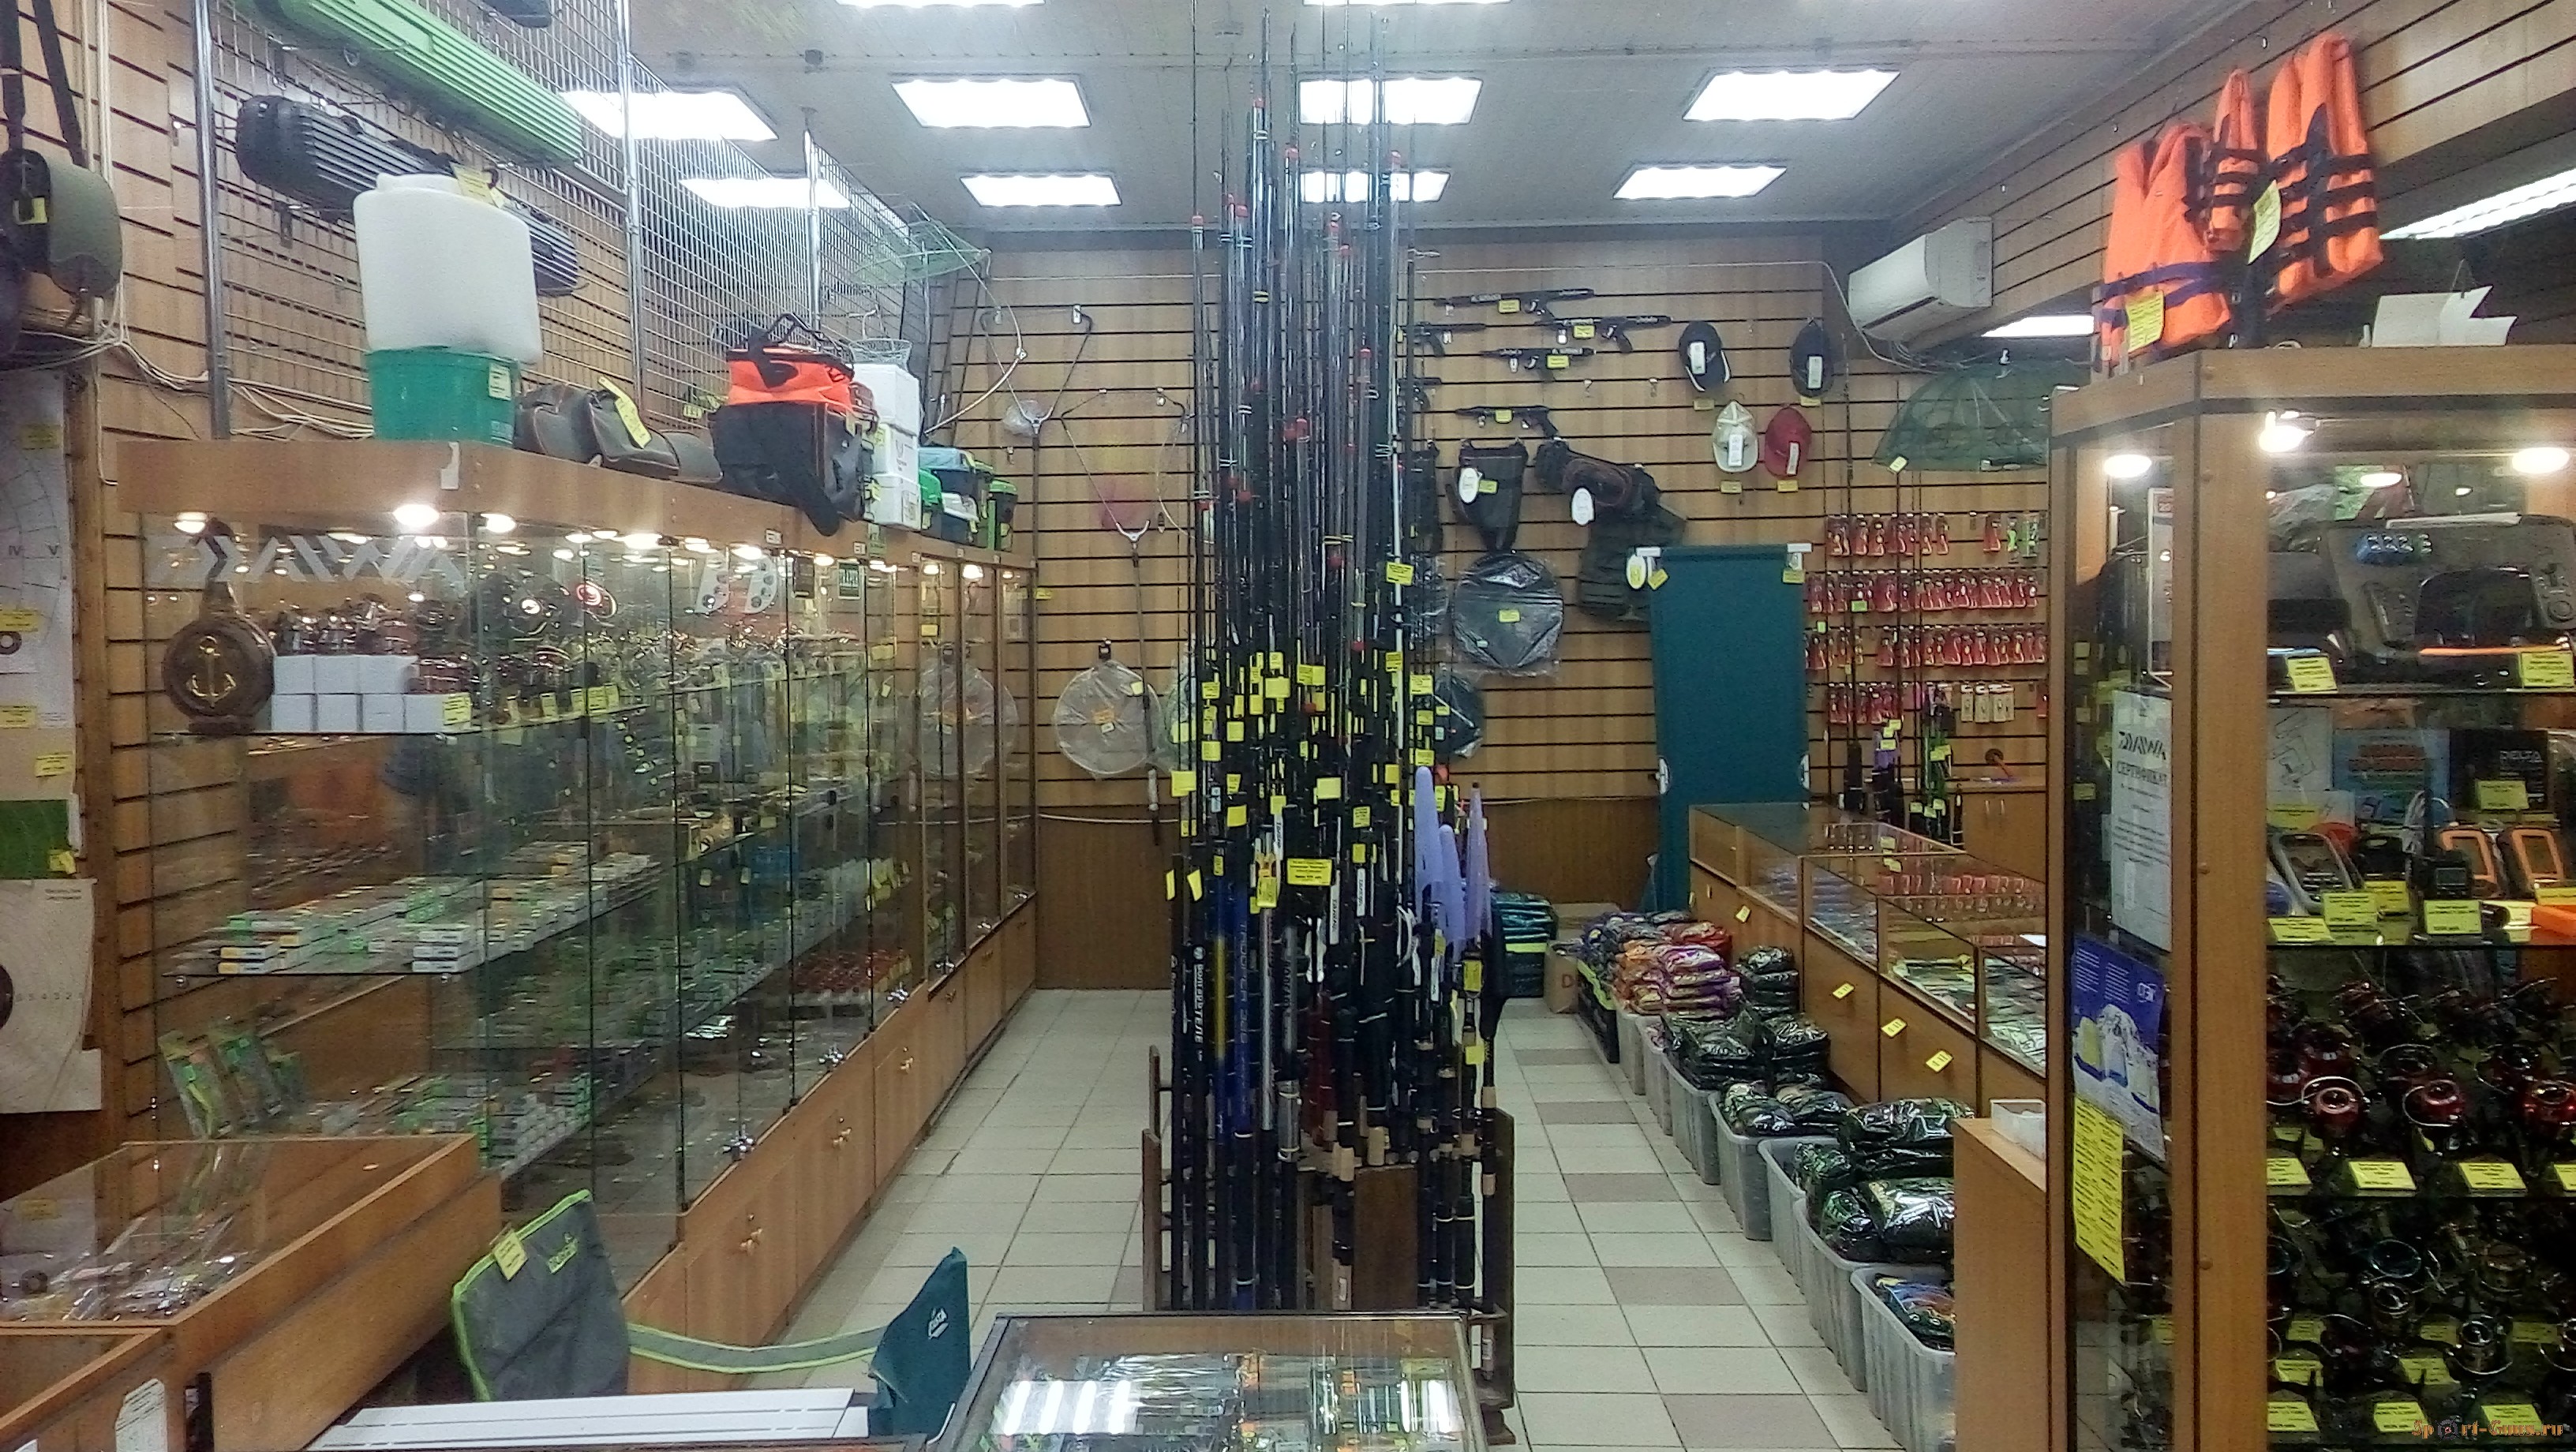 Рыболовный Магазин На Ивановской